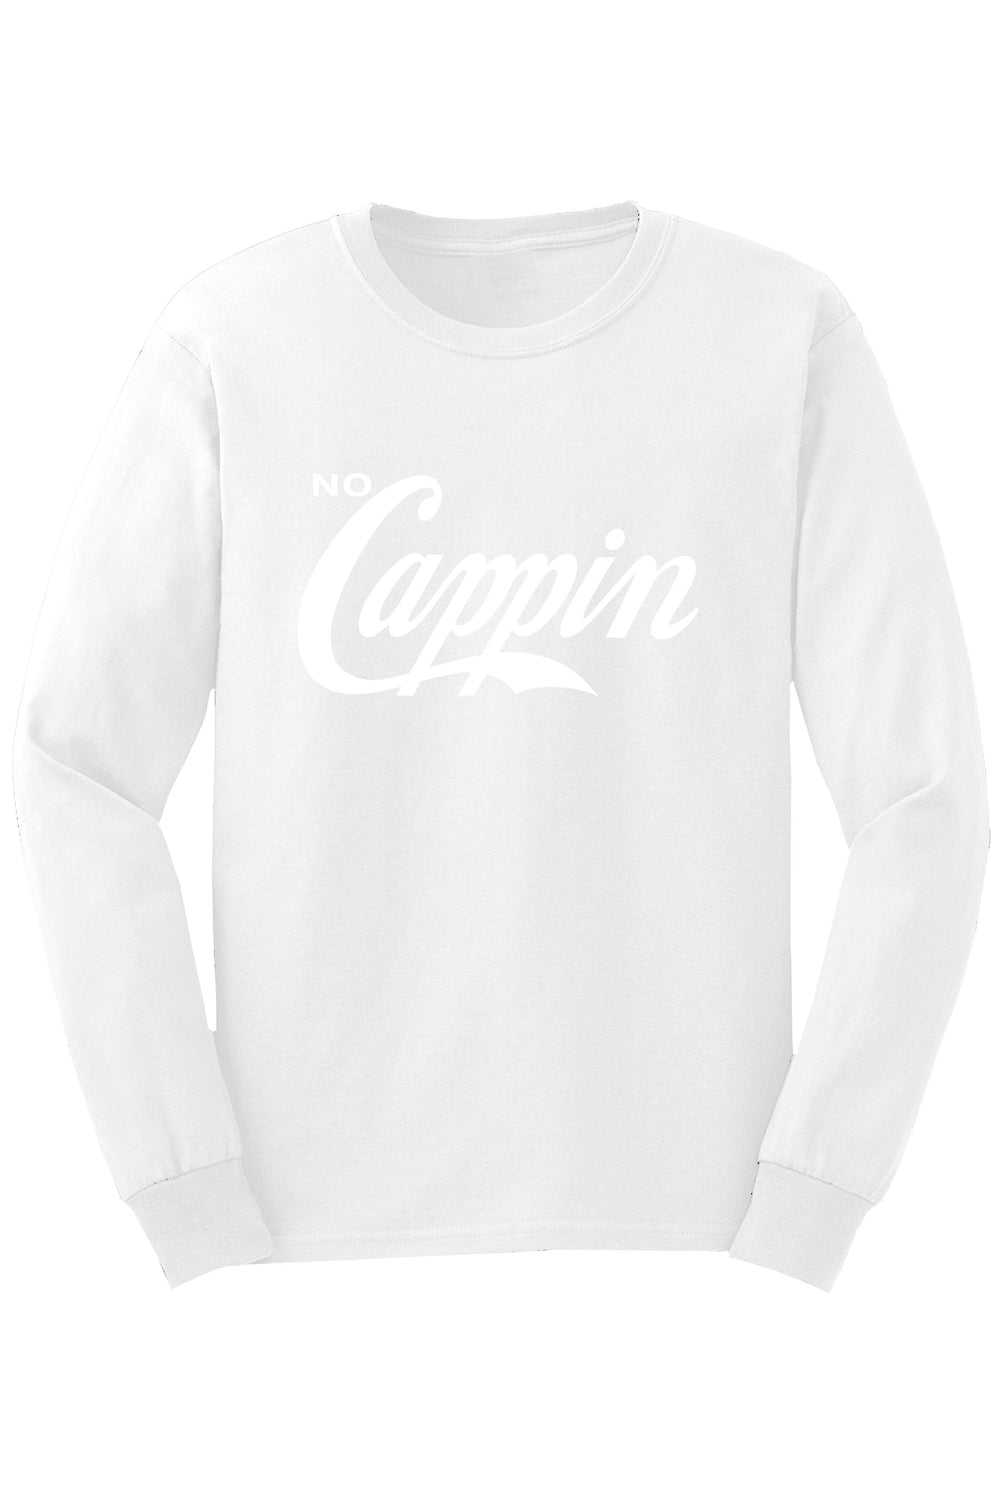 No Cappin Long Sleeve Tee (White Logo) - Zamage